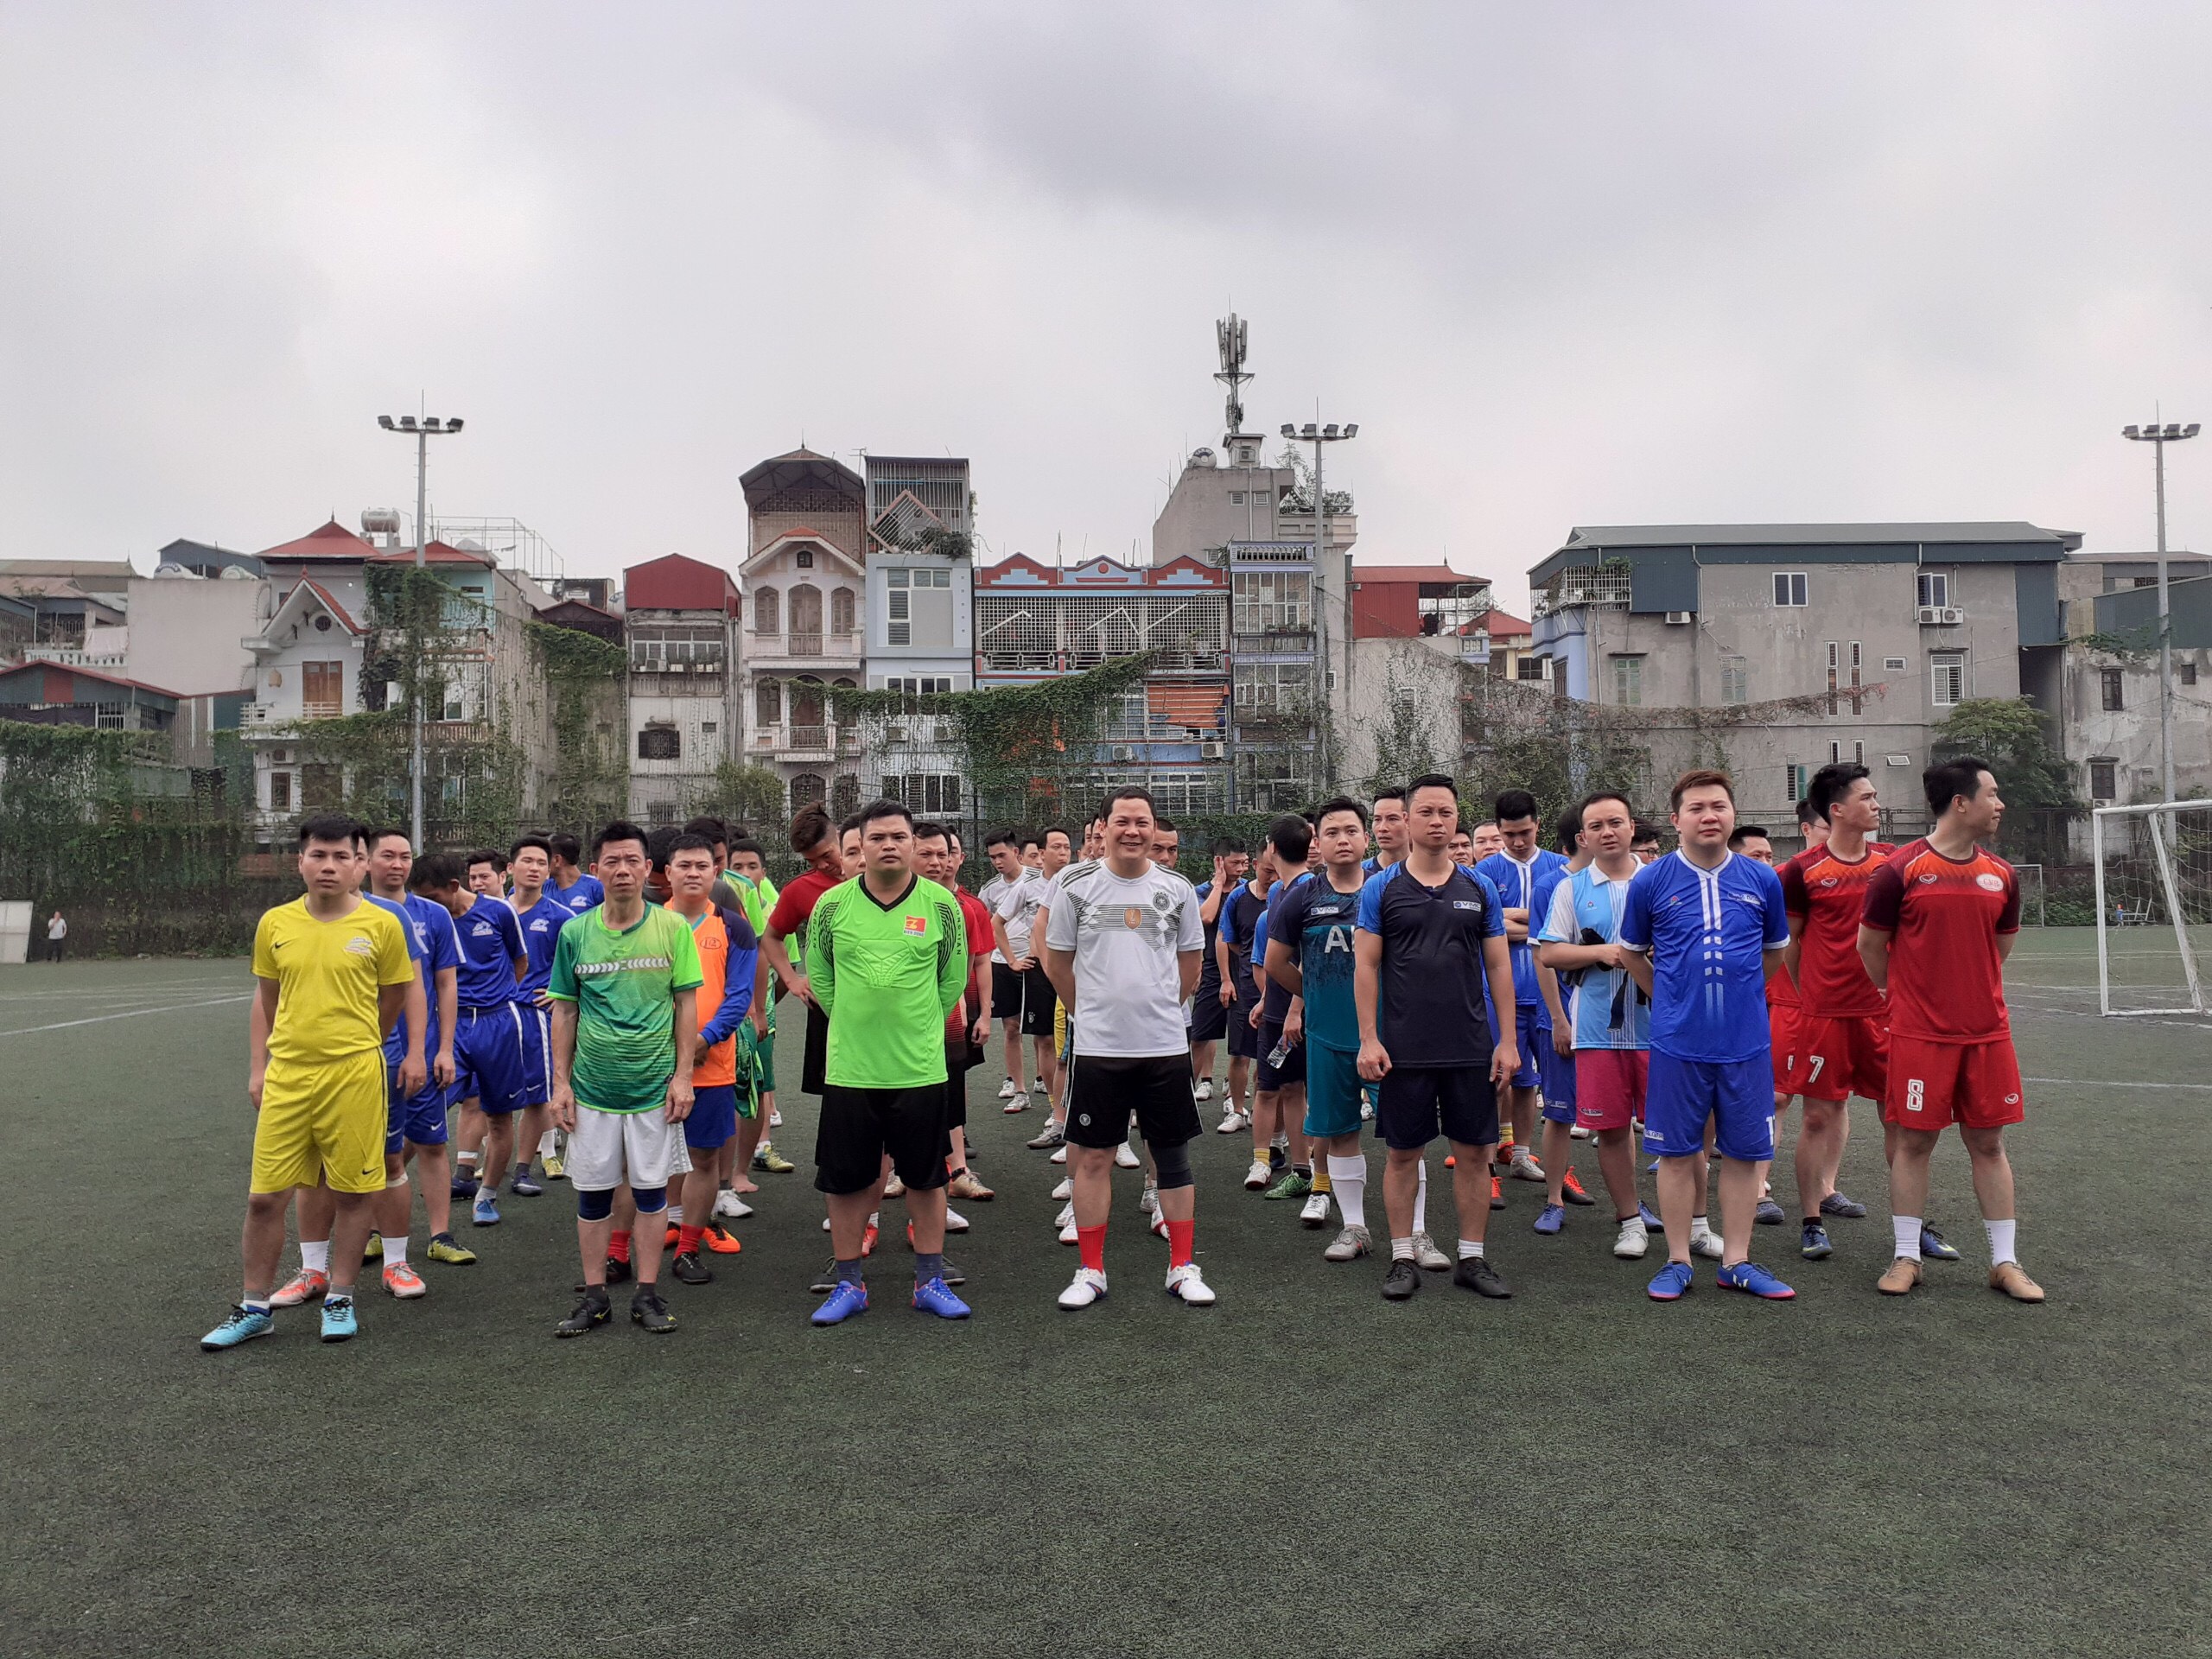 7 đội bóng tham gia giải bóng đá đến từ các đơn vị thuộc Đoàn Tổng Công ty Hàng hải Việt Nam